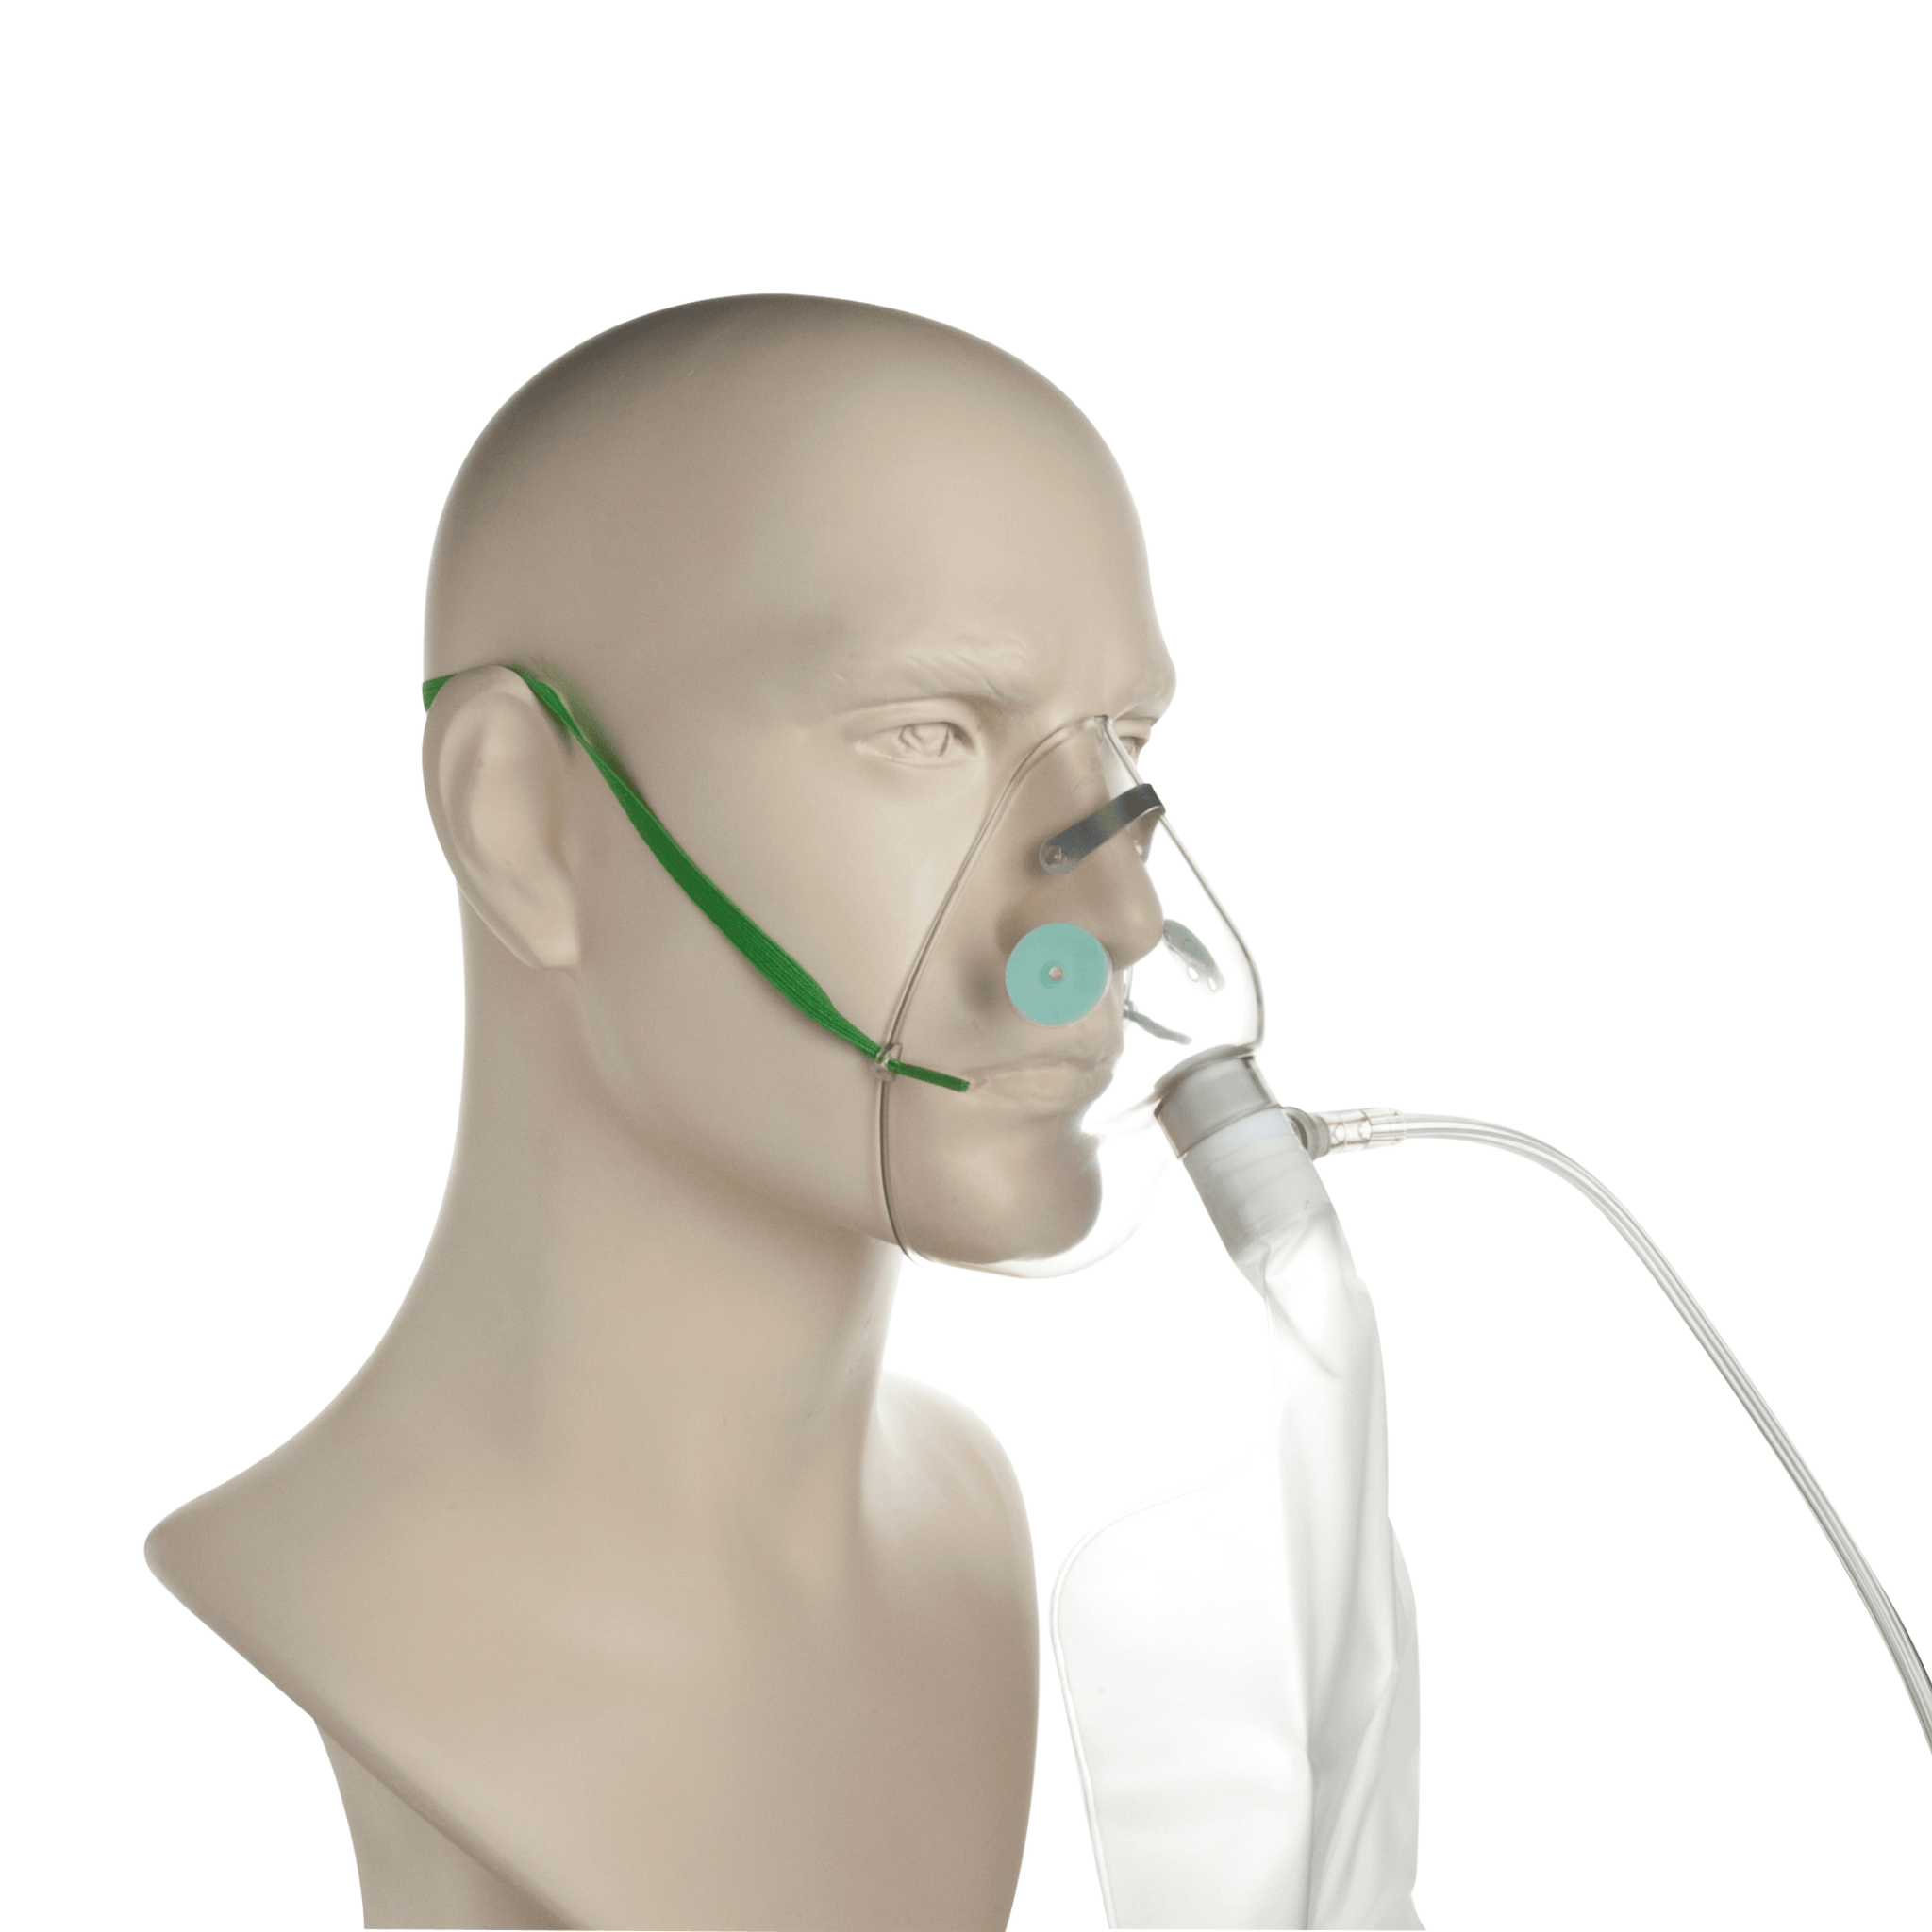 Hi- Concentration Oxygen Mask with Reservoir & Tube- Adult